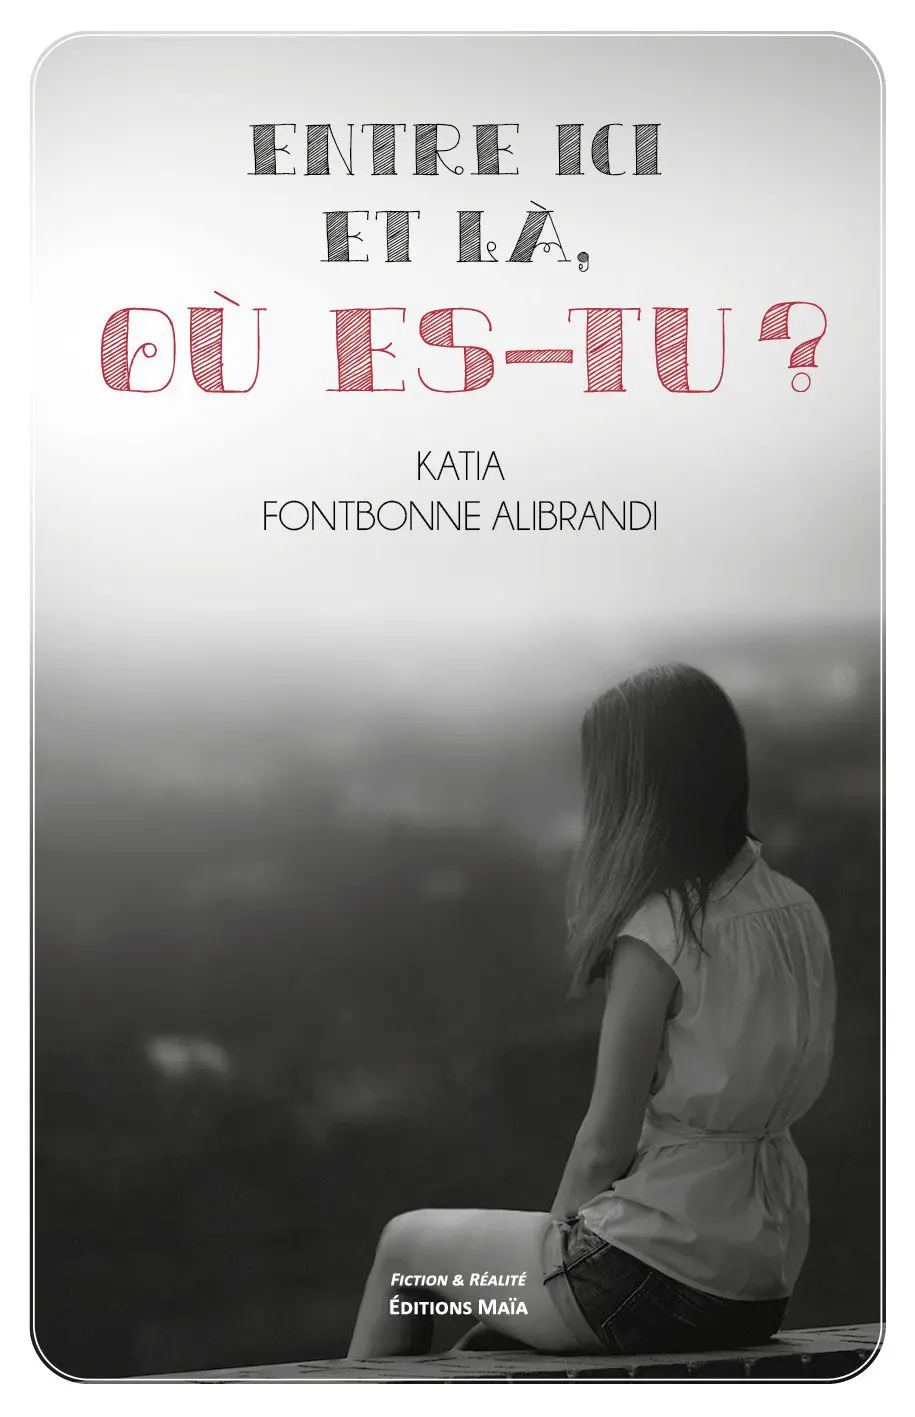 Entretien avec Katia Fontbonne Alibrandi – Entre ici et là, où es-tu ?